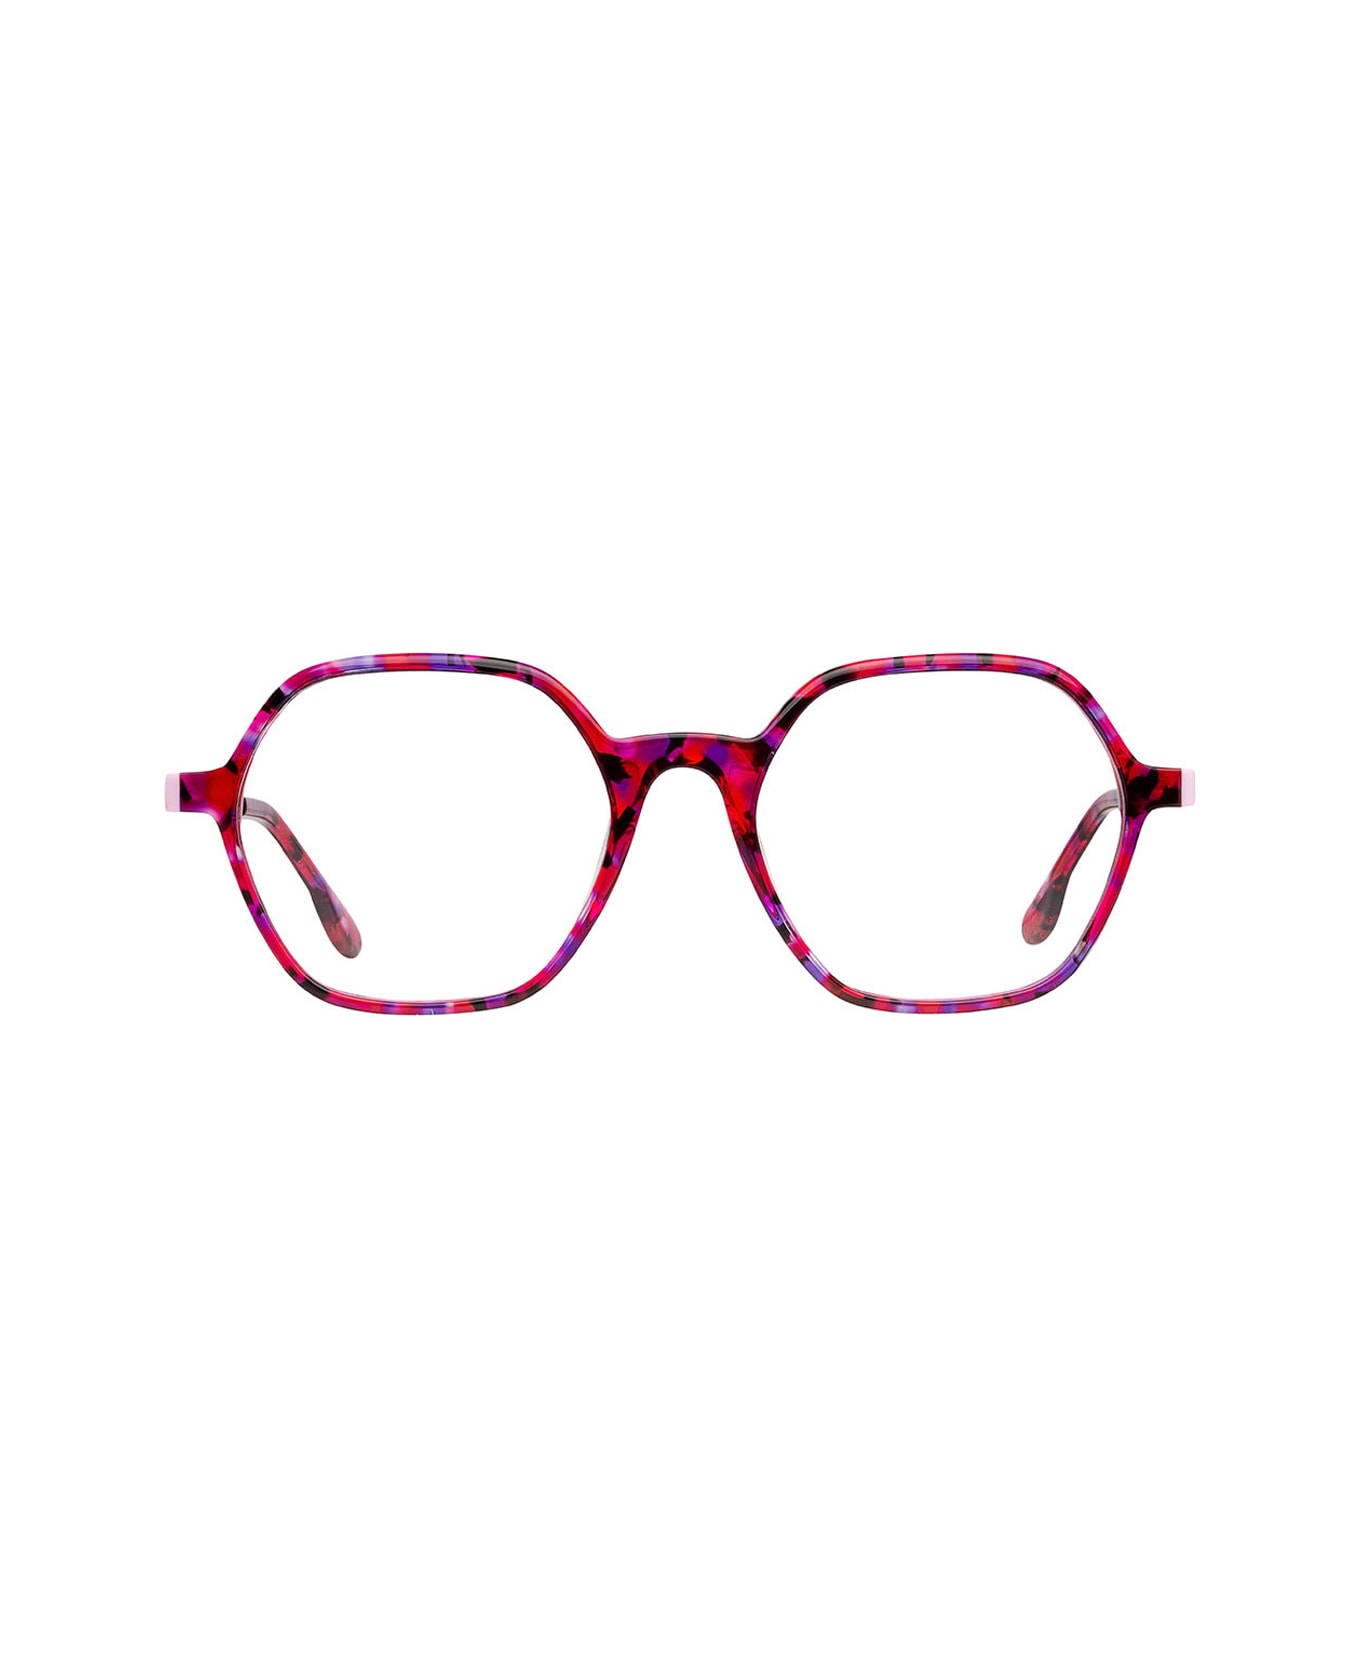 Matttew Iroise Glasses - Rosa アイウェア